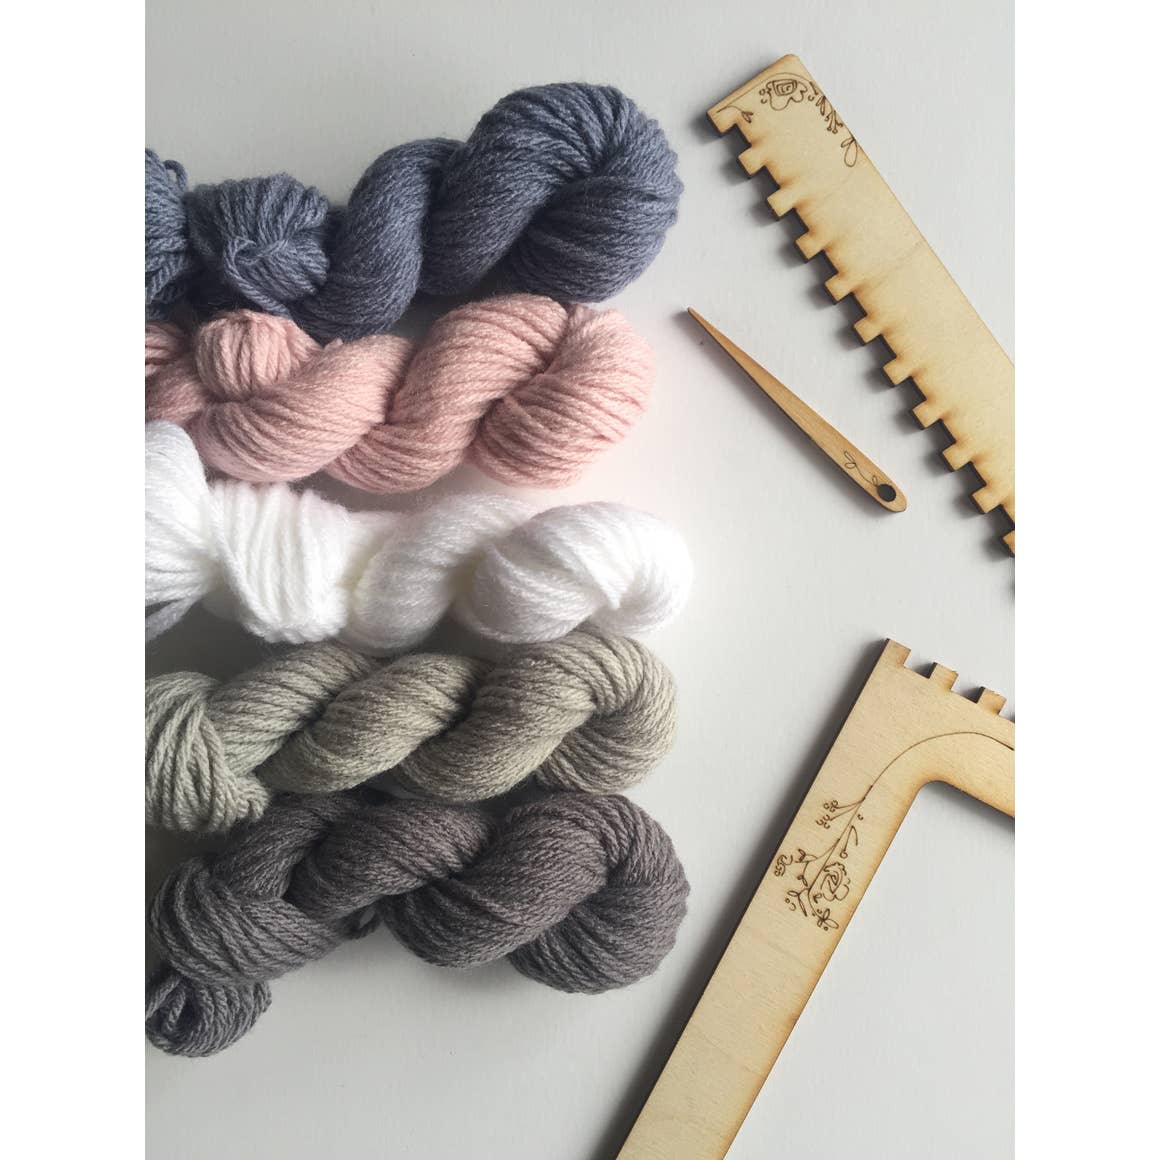 Tapestry Weaving Kit - Dream by Black Sheep Goods